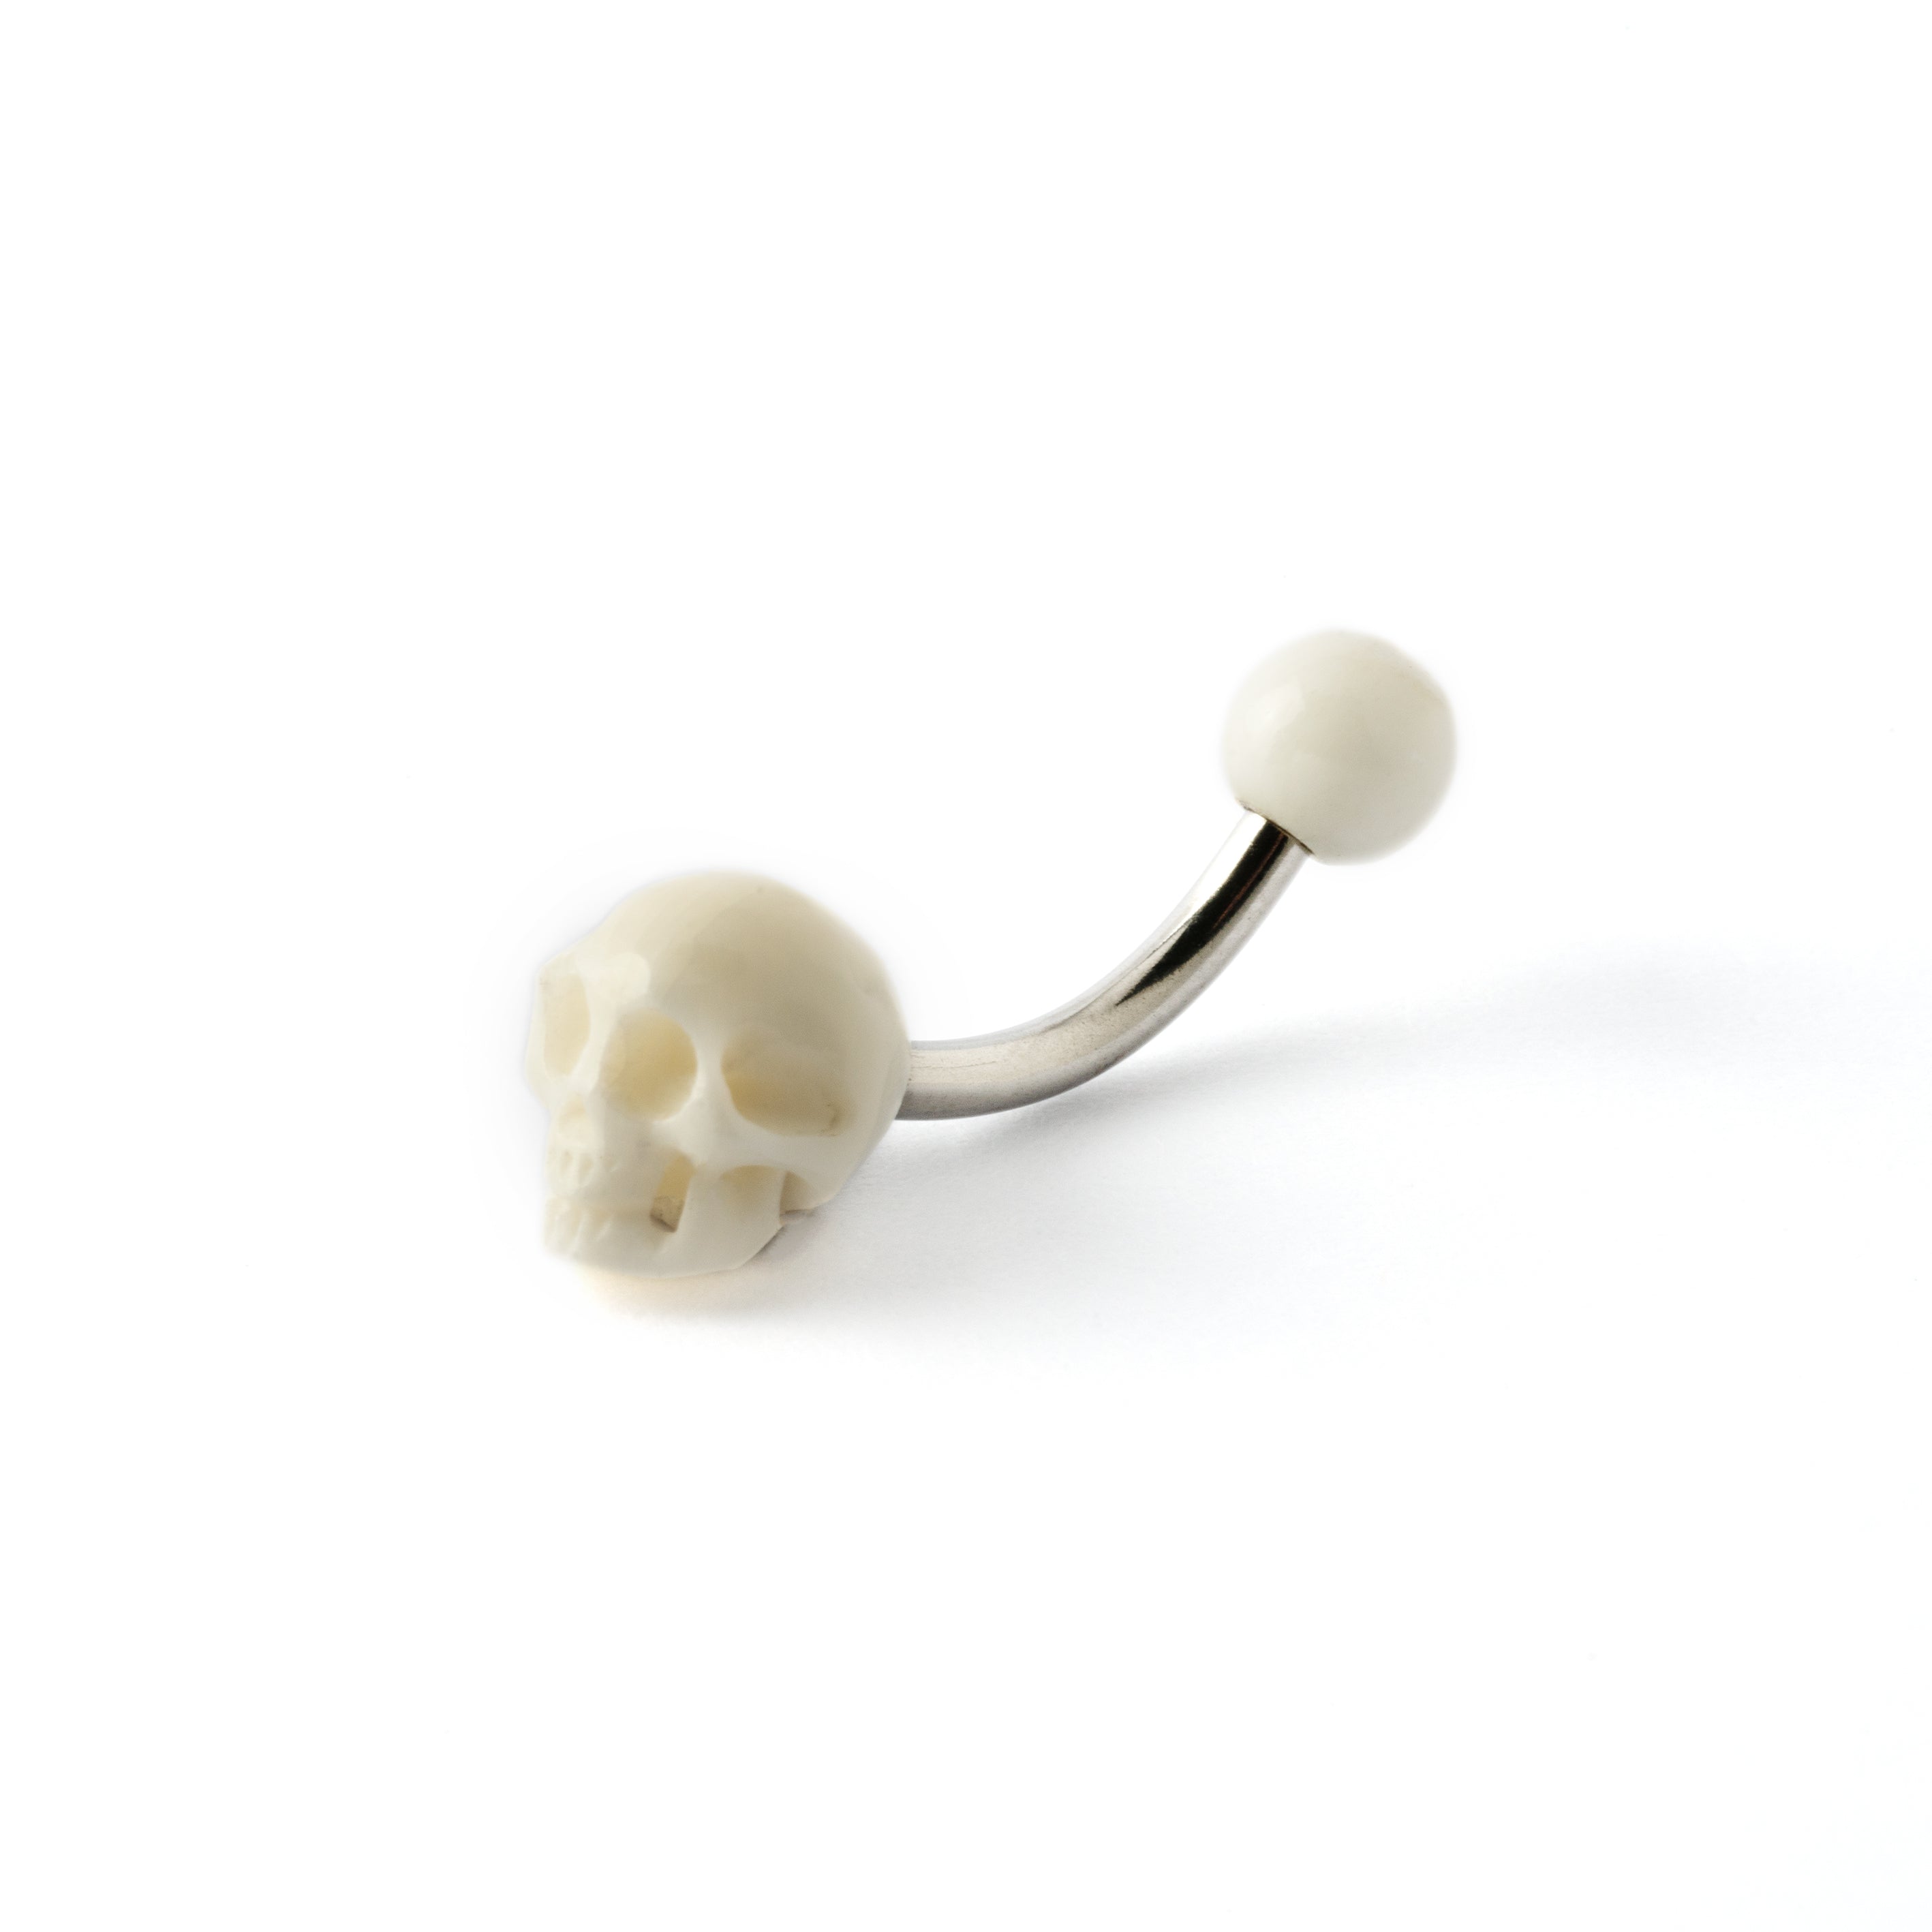 White skull navel piercing on a surgical steel bar